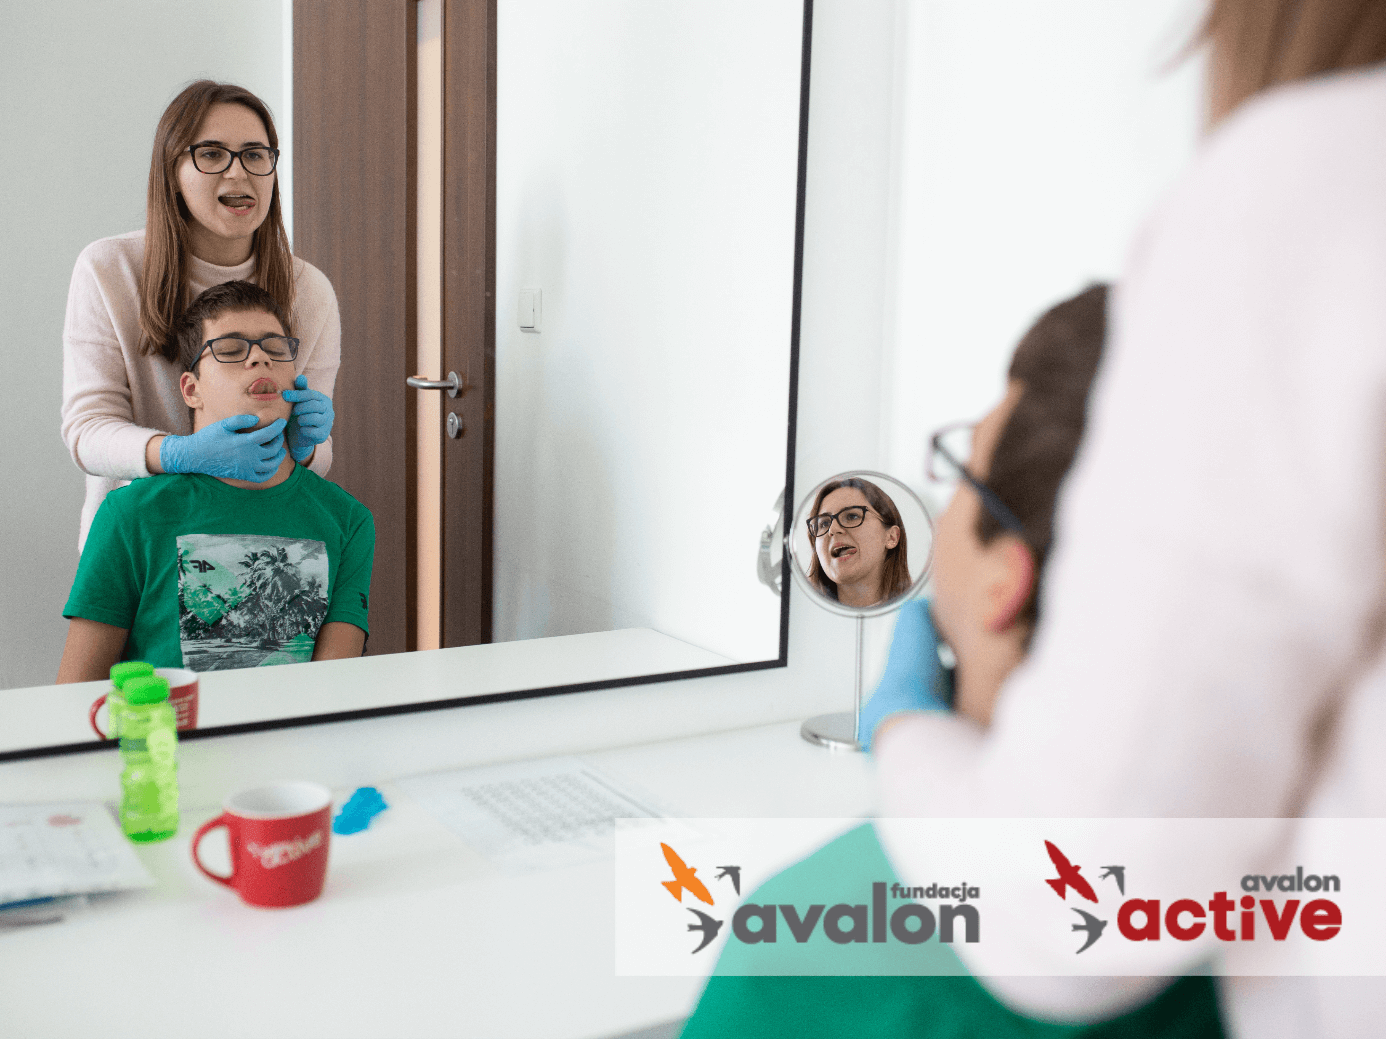 Kobieta i chłopiec stoją przed lustrem i zaglądają mu do buzi. W prawym dolnym rogu zdjęcia znajduje się logo Fundacji Avalon i Projektu Avalon Active.